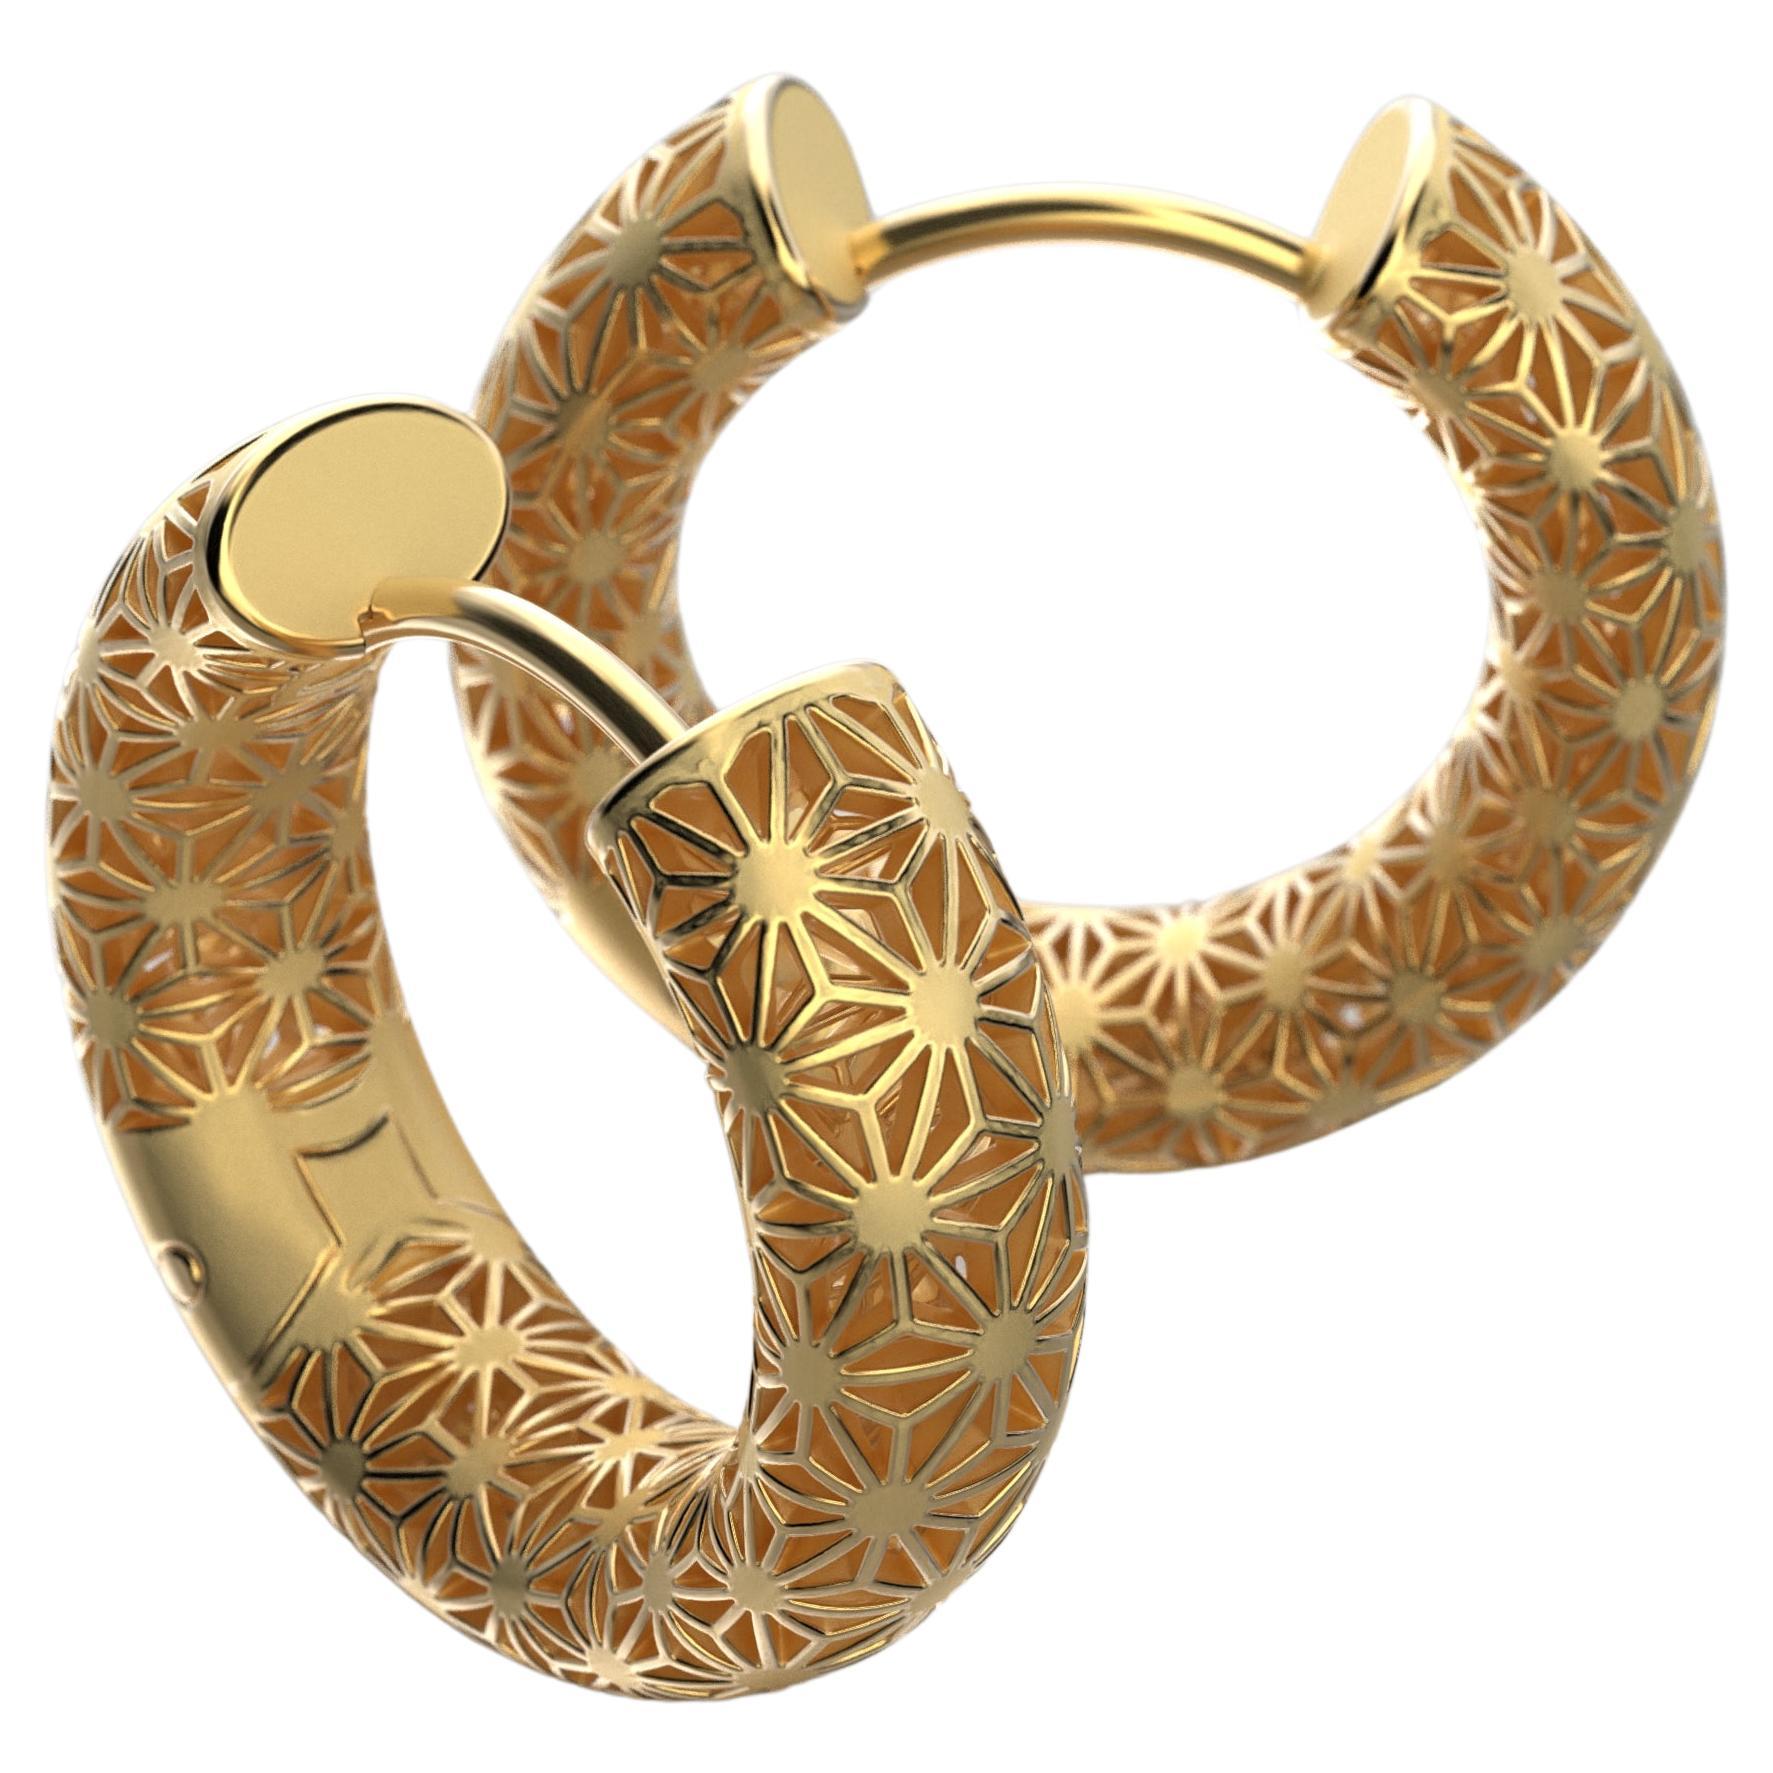 Erleben Sie zeitlose Eleganz mit unseren nur auf Bestellung sorgfältig gefertigten italienischen Goldreifen-Ohrringen. Die in Italien handgefertigten Reifen sind mit einem zarten, von der japanischen Stickerei inspirierten Sashiko-Muster versehen,